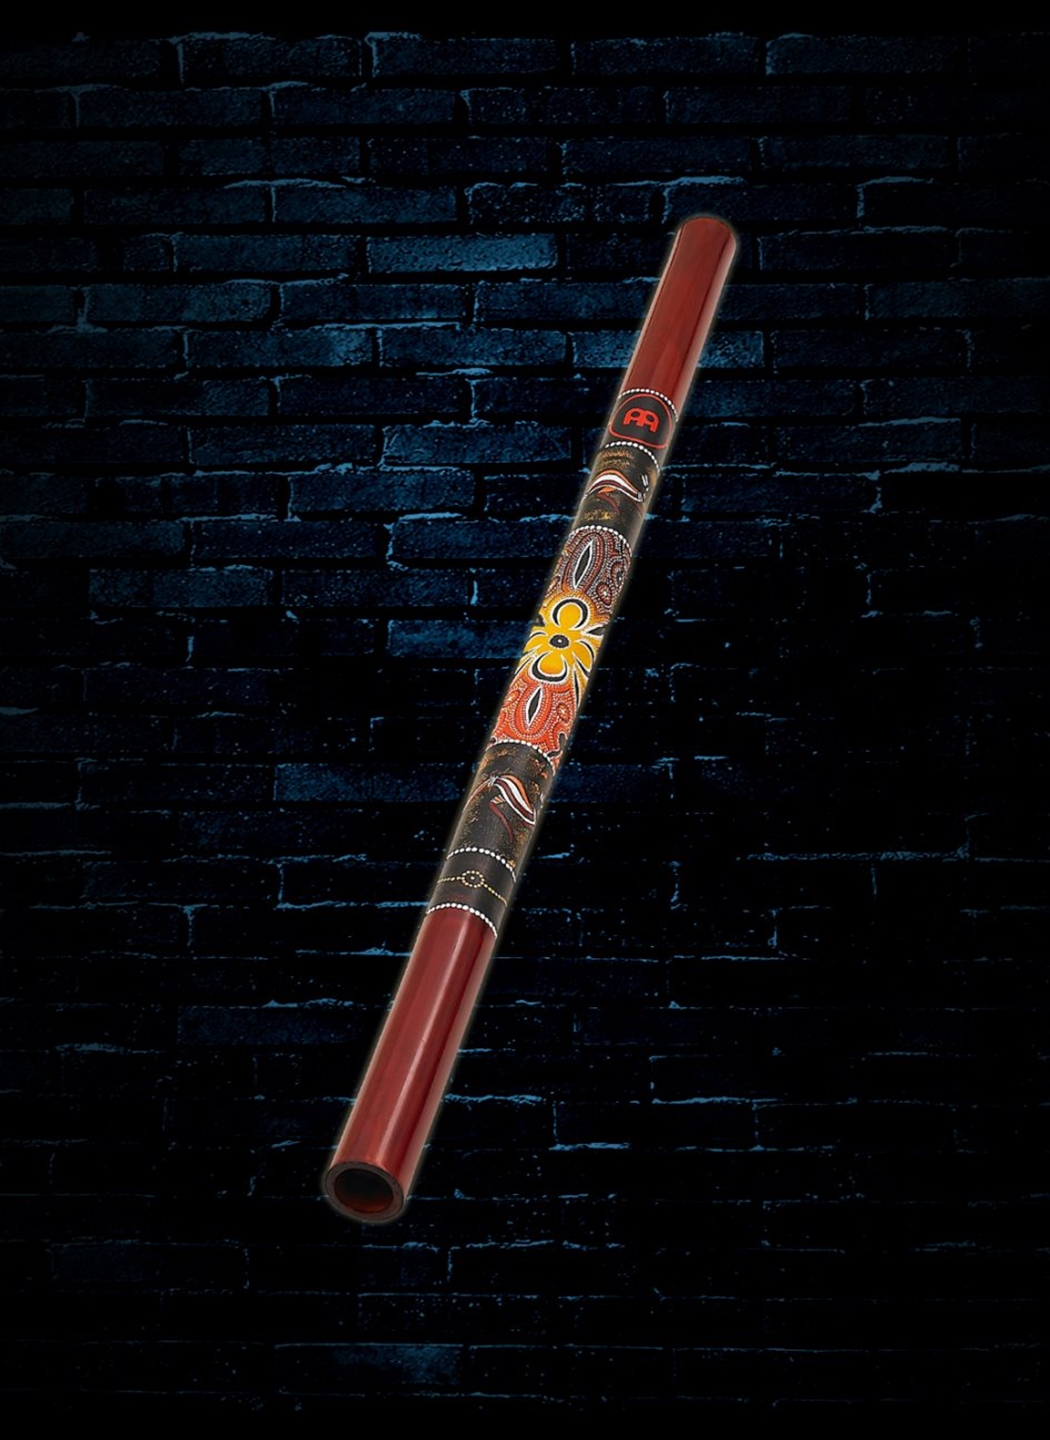 MEINL DDG1-R Didgeridoo